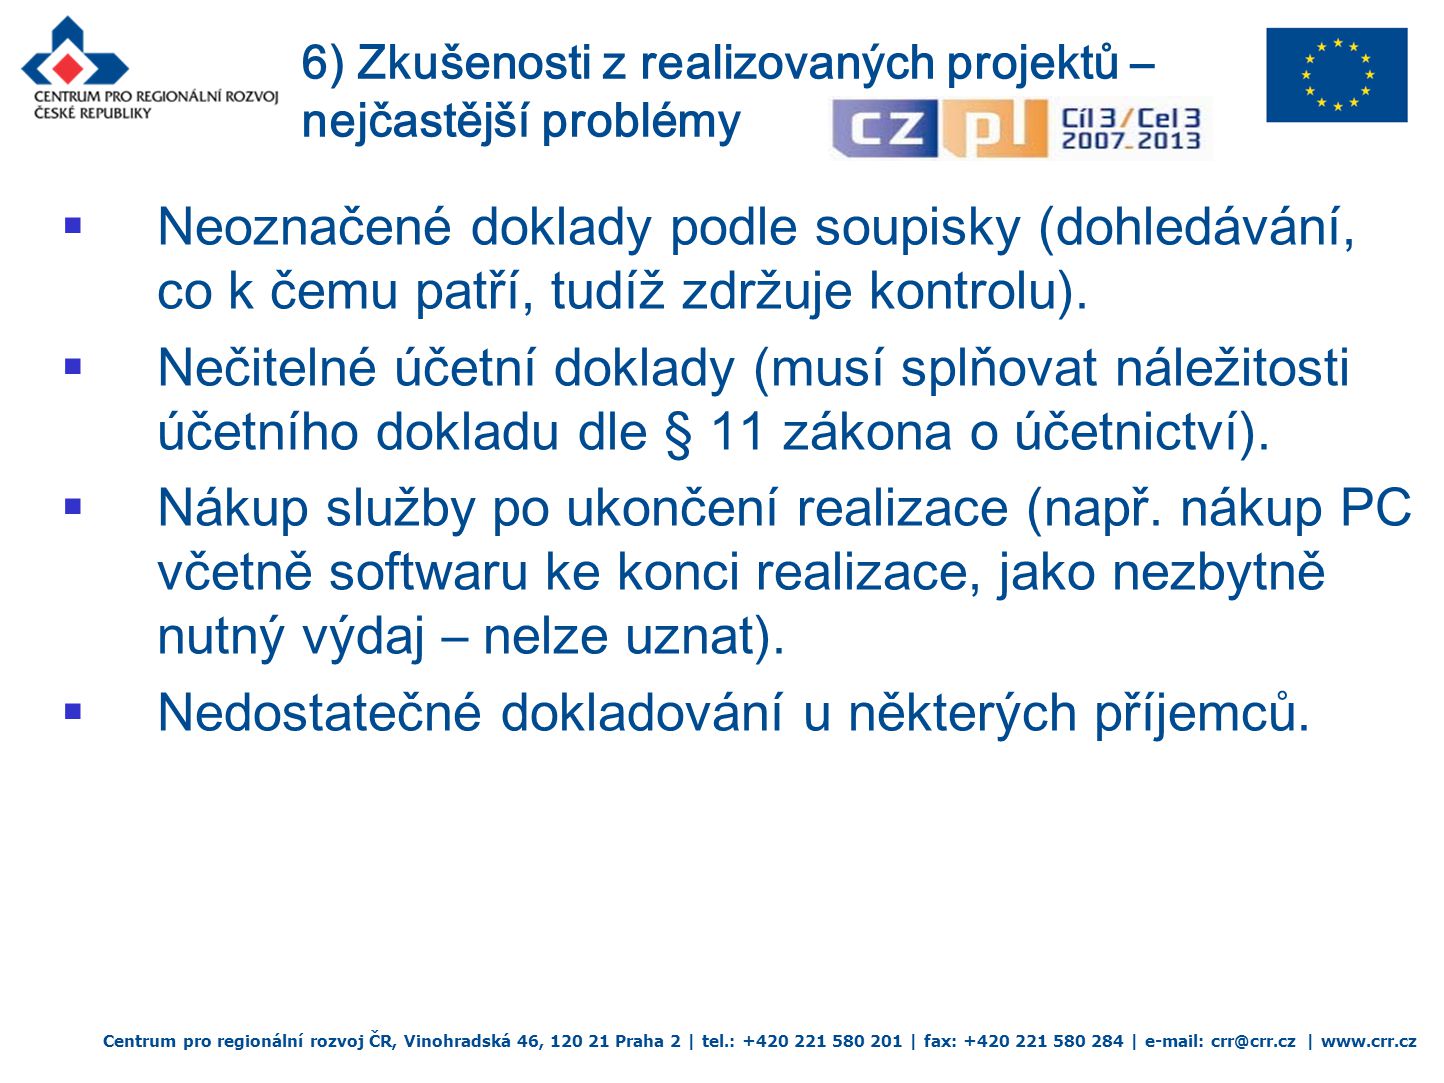 Centrum pro regionální rozvoj ČR, Vinohradská 46, Praha 2 | tel.: | fax: |   |    Neoznačené doklady podle soupisky (dohledávání, co k čemu patří, tudíž zdržuje kontrolu).